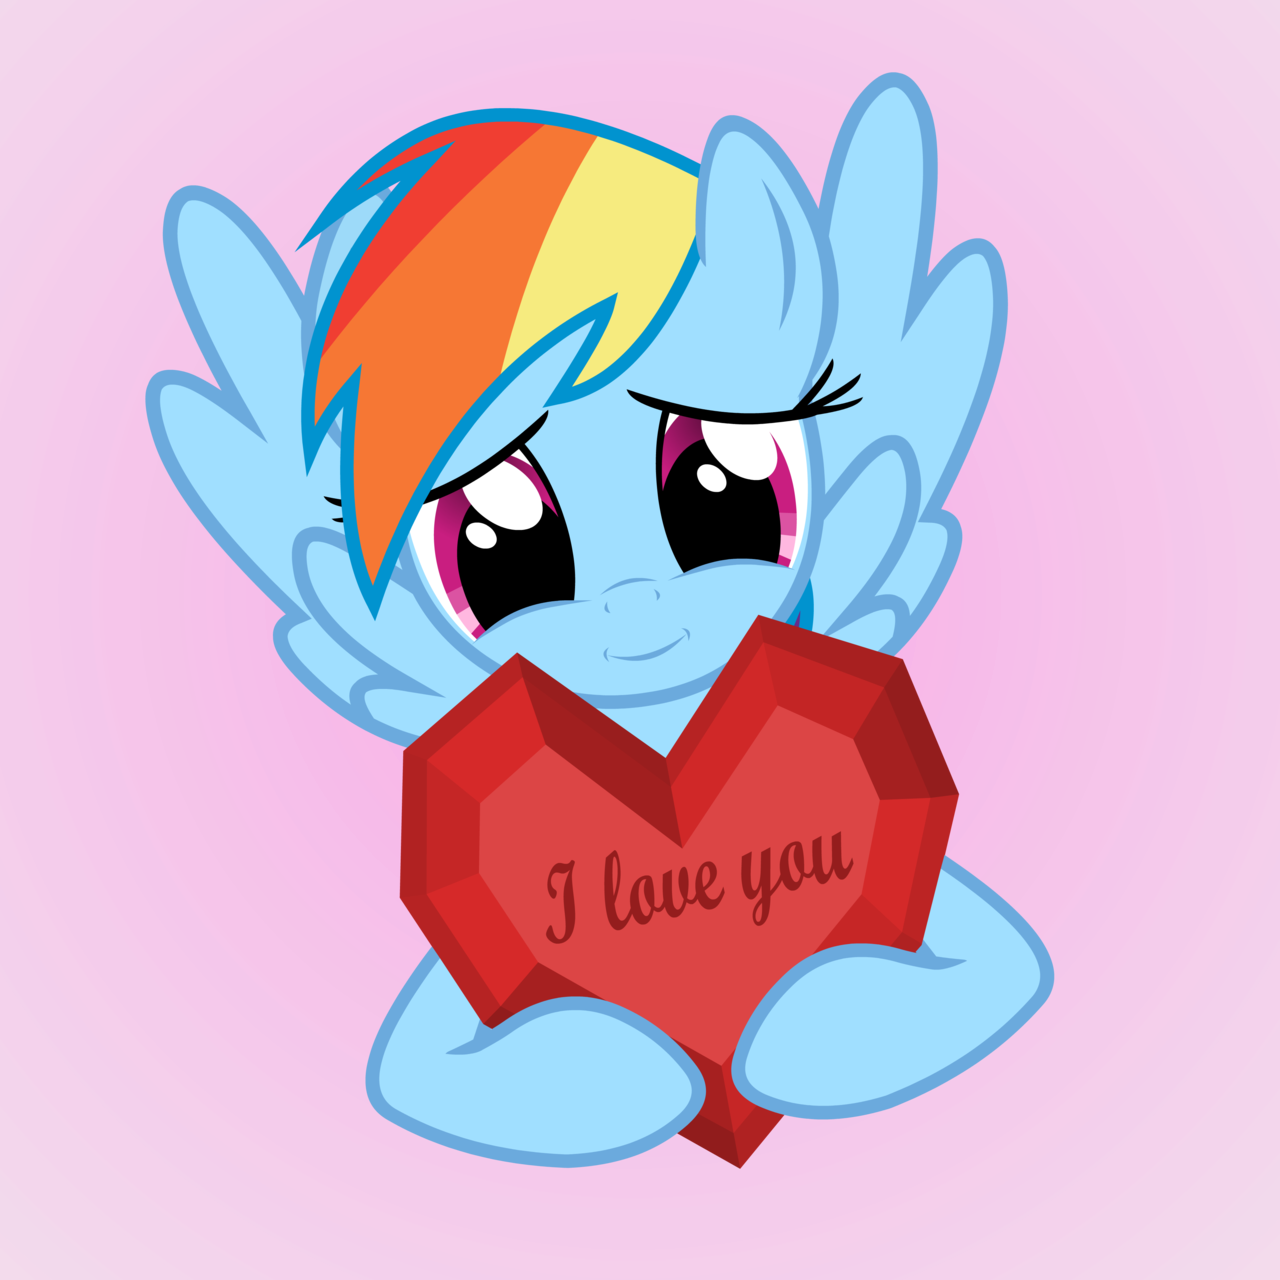 J Love Yau Pinkie Pie My Little Pony - Little Pony Friendship Is Magic (1280x1280)